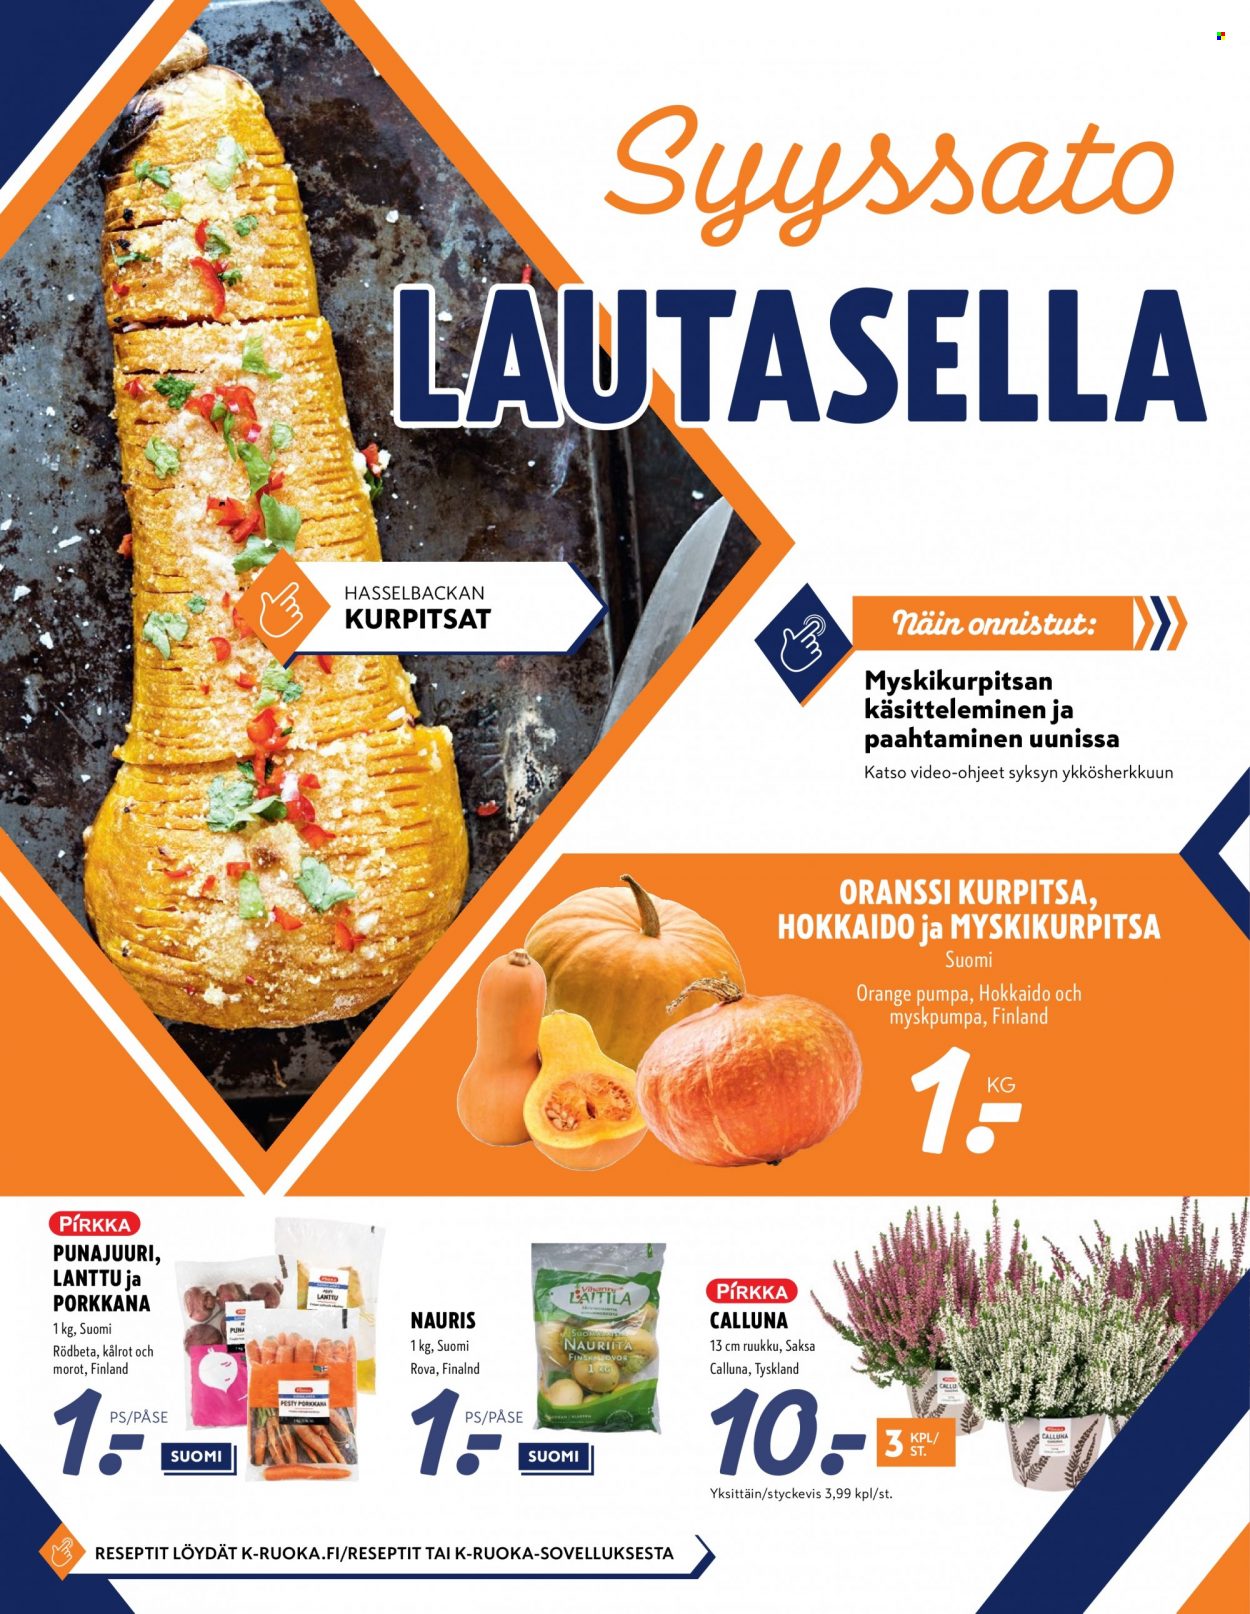 K-Supermarket tarjouslehti  - 14.10.2021 - 17.10.2021.